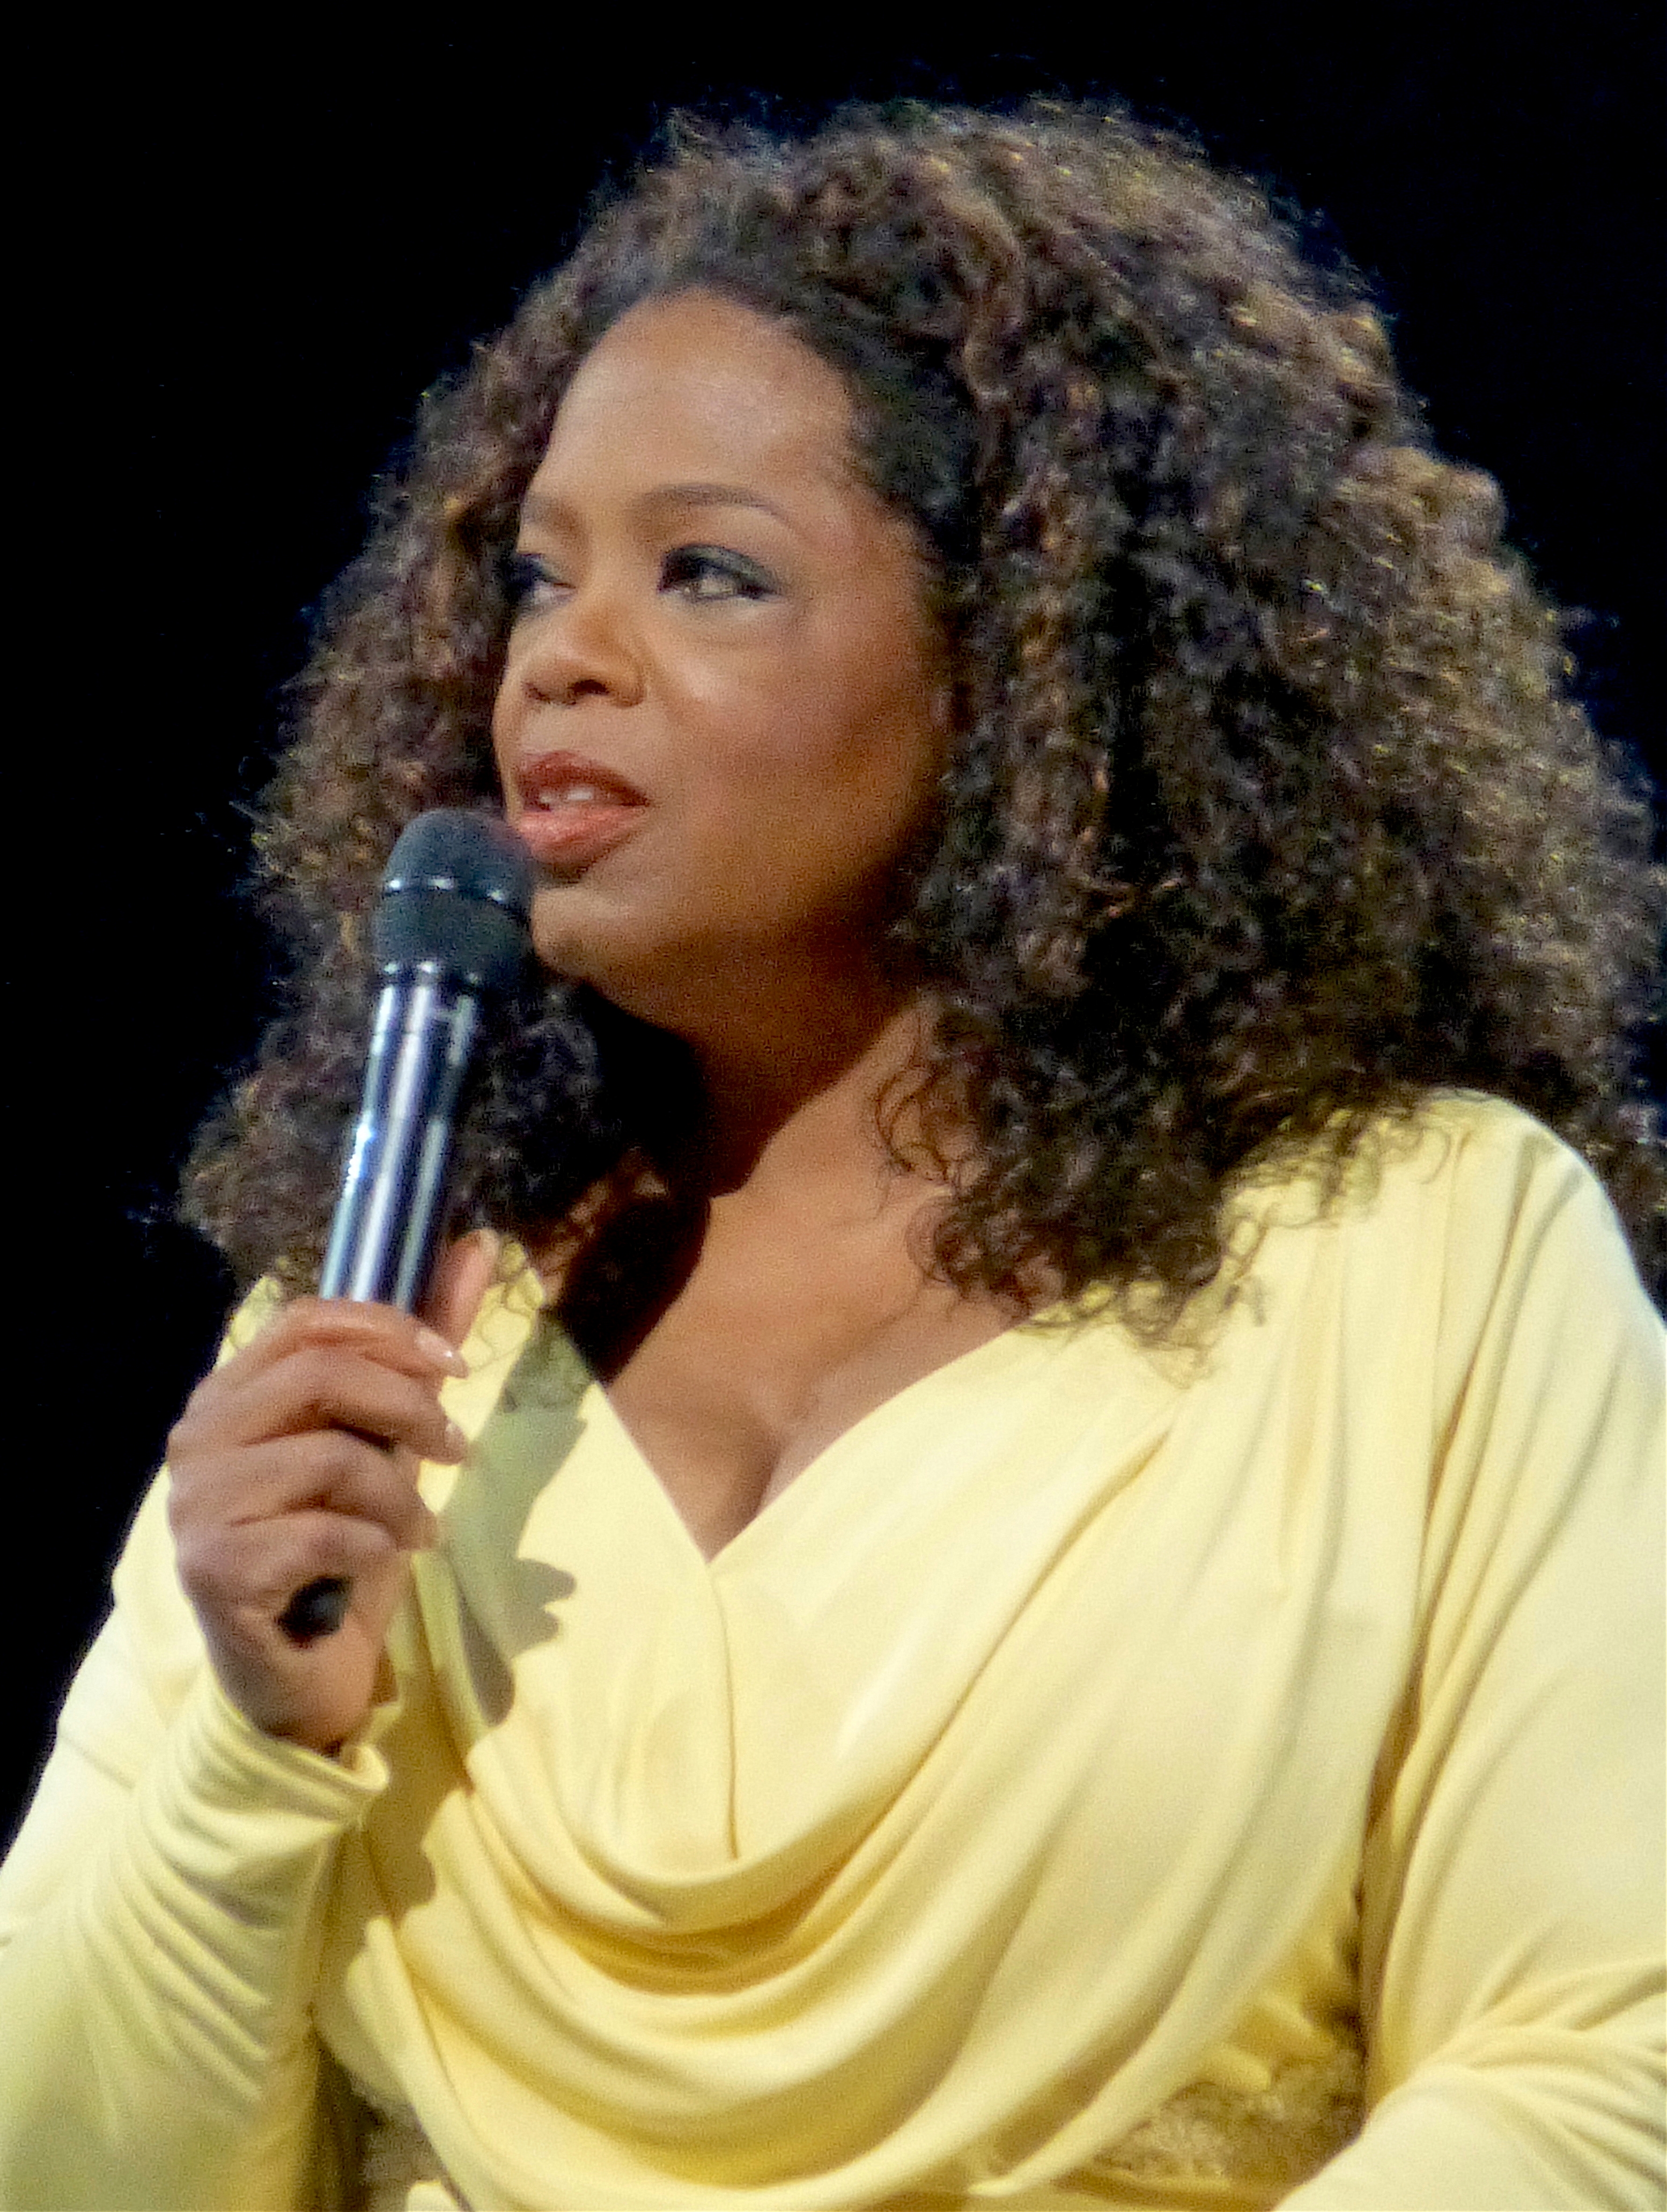 auteur Oprah Winfrey de la citation Transformer vos blessures en sagesse.